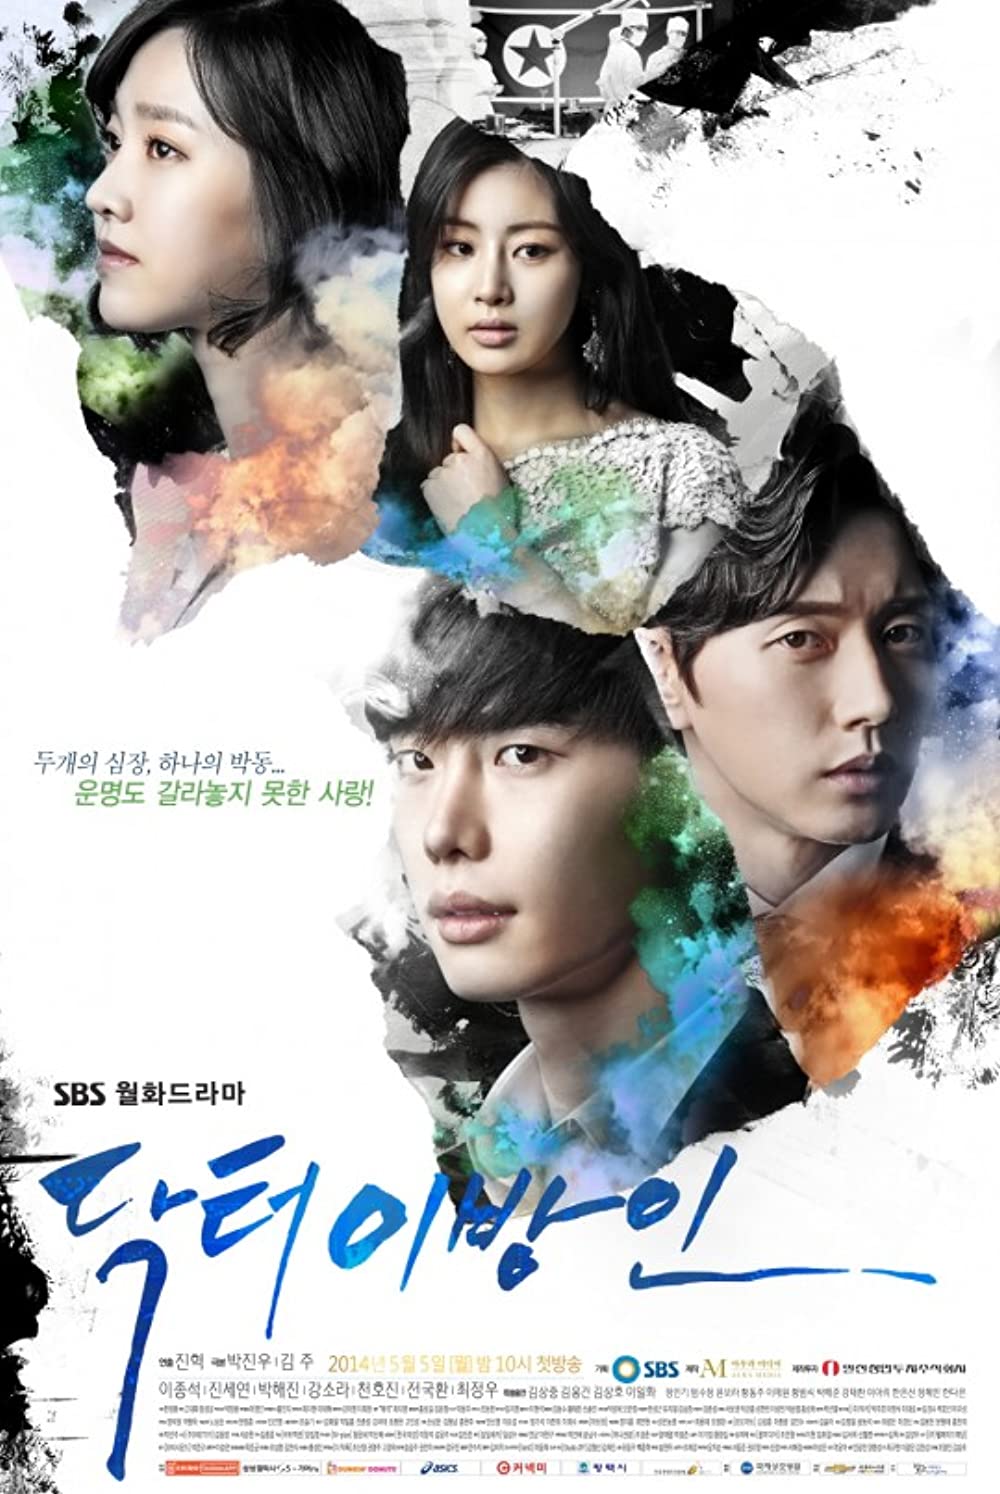 7 Drama Korea kisah tentang dokter spesialis, penuh perjuangan